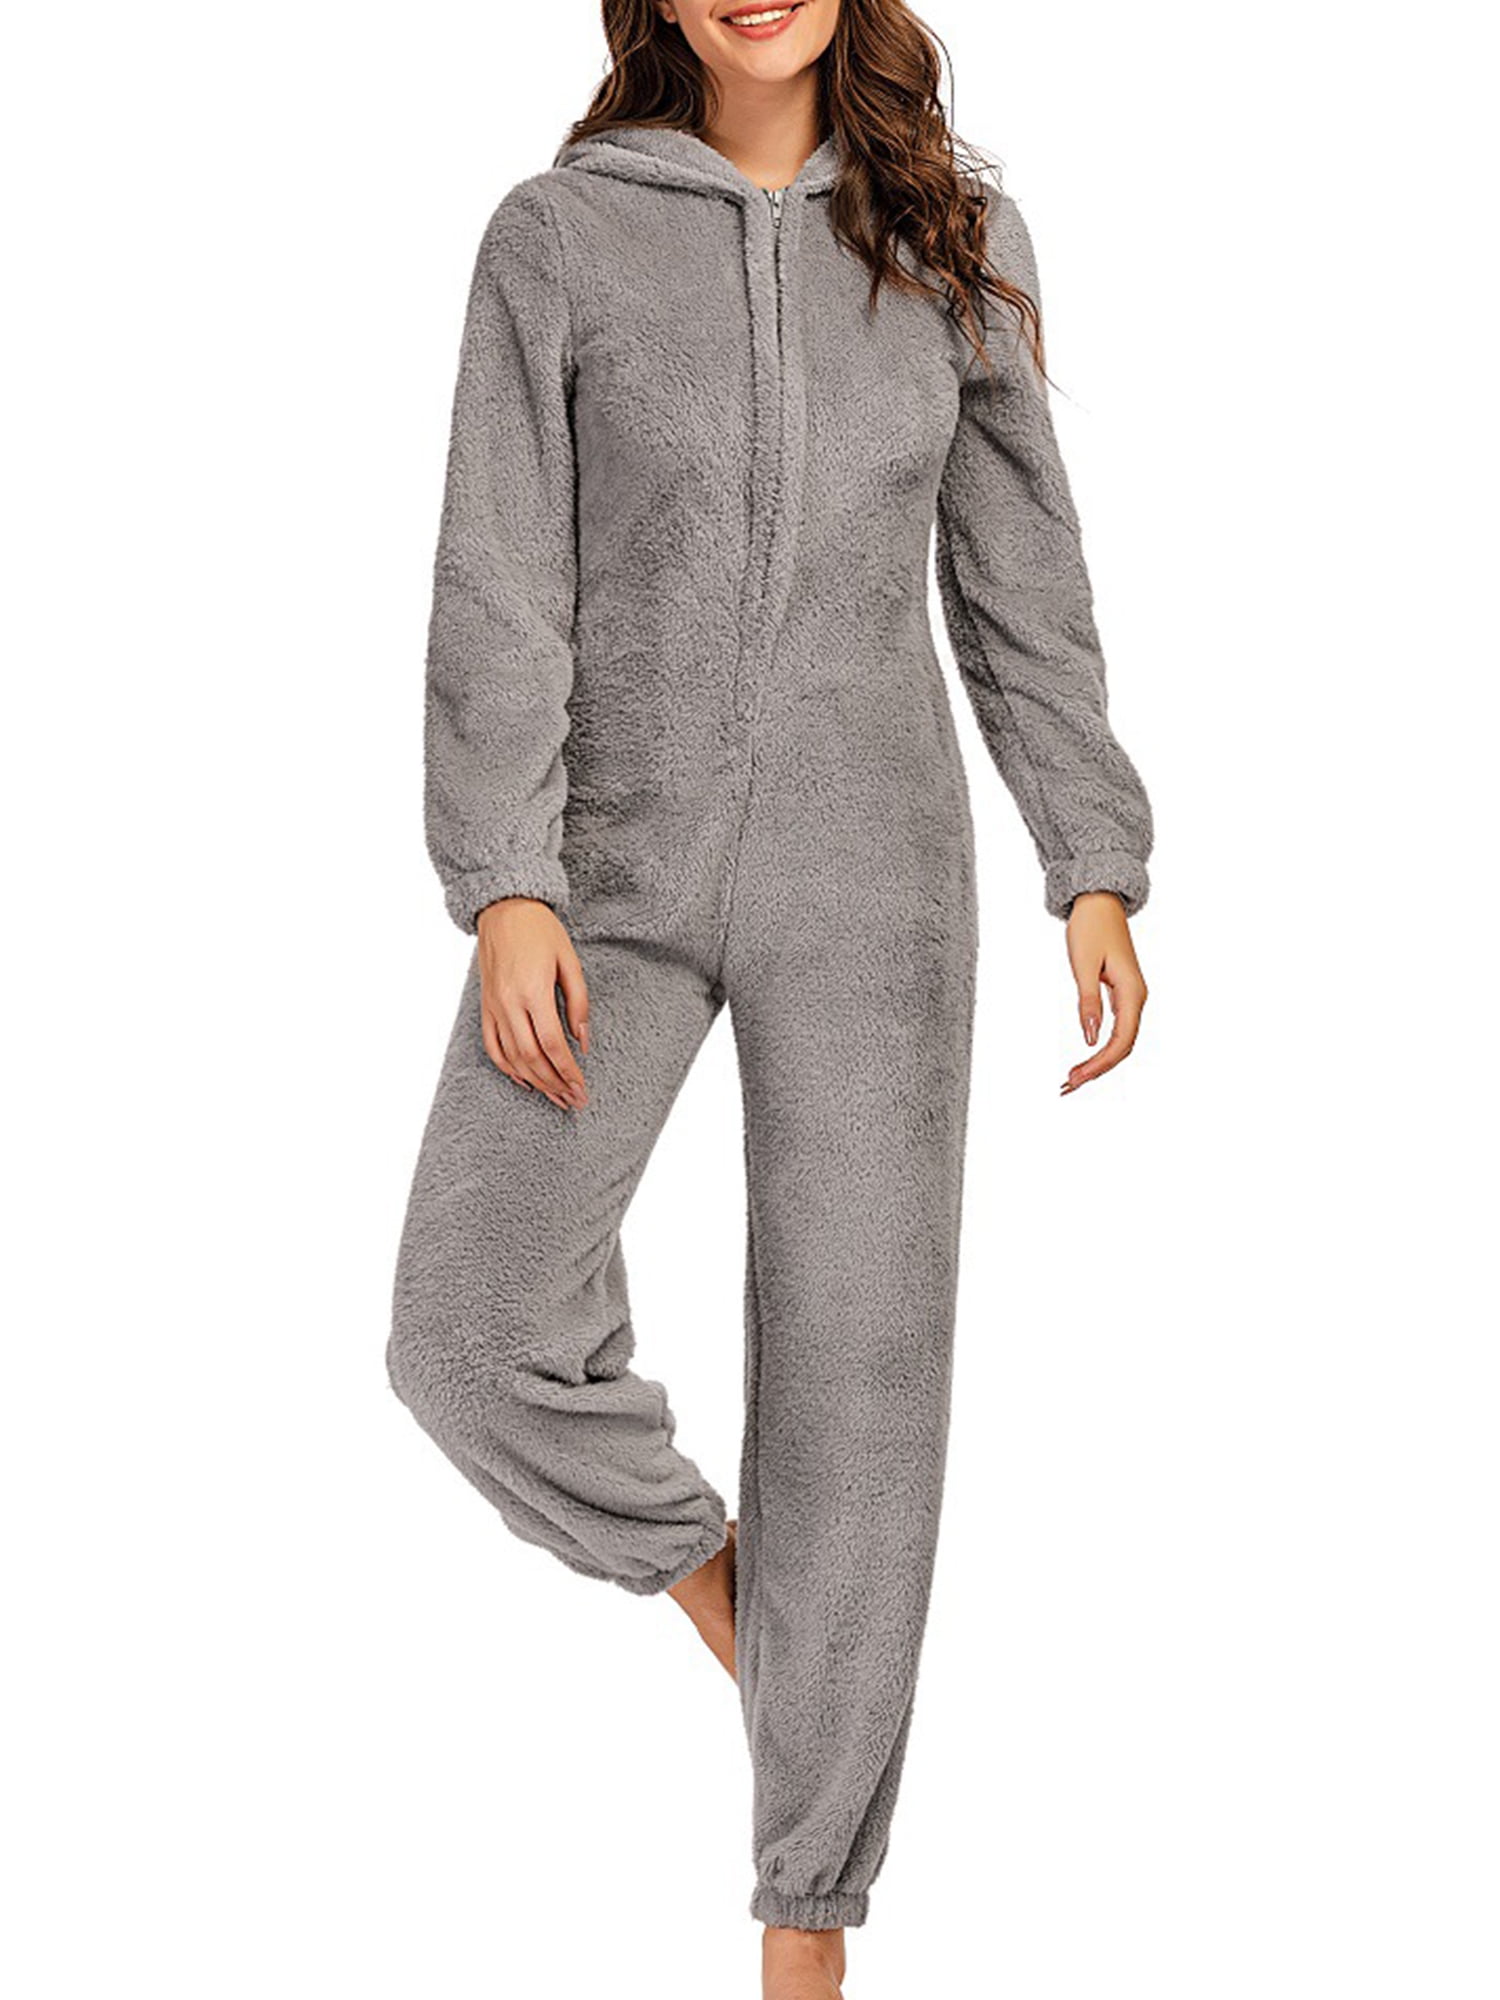 native rand Beukende Niuer Long Sleeve Hooded Onesie for Women Kids Plush Fleece Jumpsuit  Sleepwear Nightwear - Walmart.com